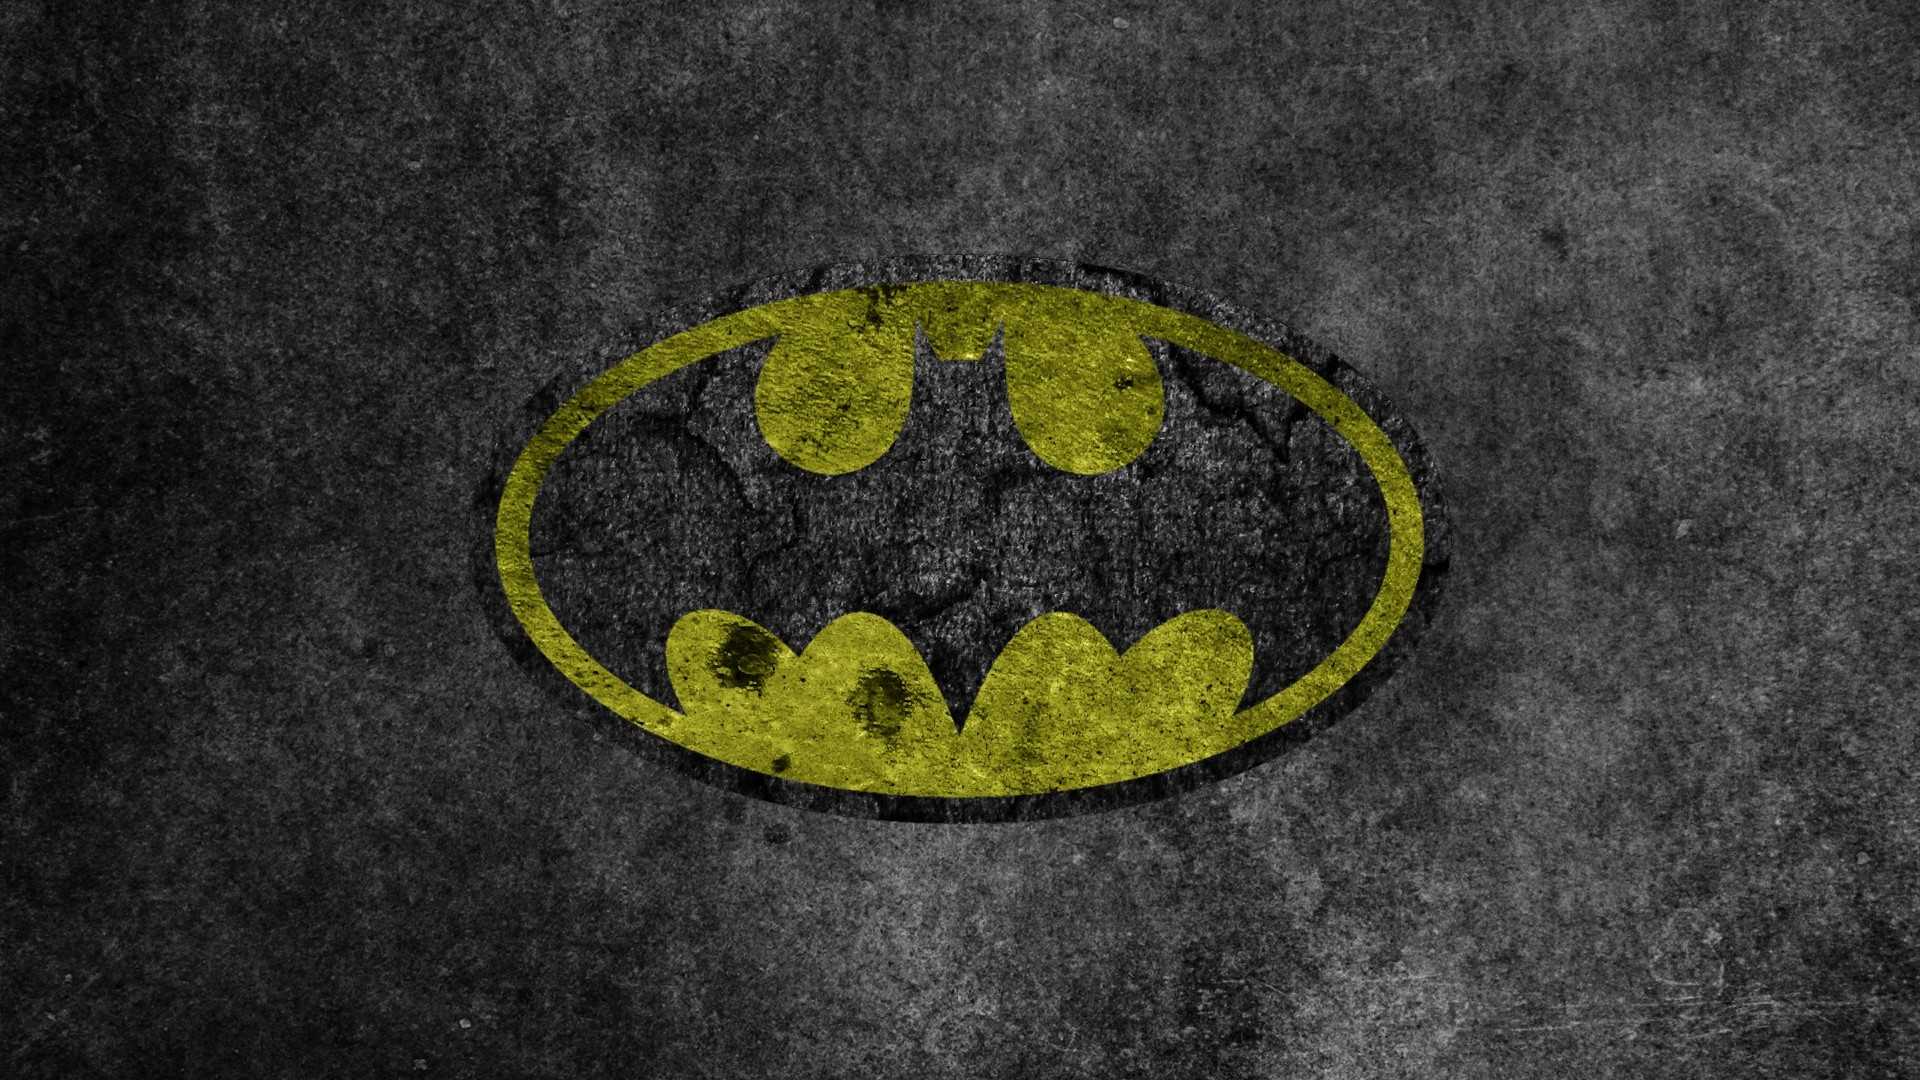 Batman Full HD Wallpapers - Wallpaper Cave